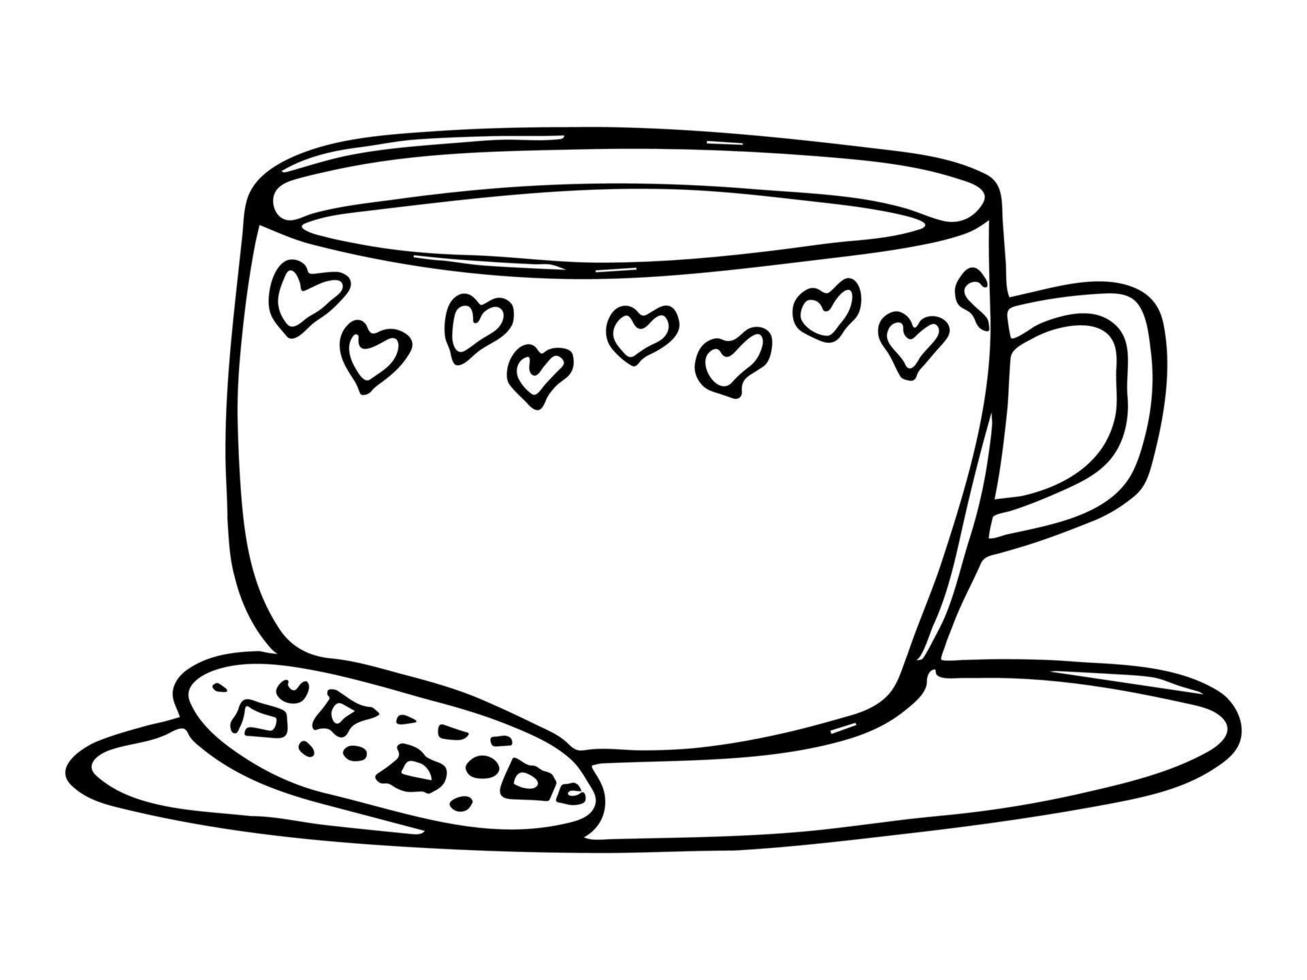 jolie tasse d'illustration de thé ou de café. clipart de tasse simple. griffonnage à la maison confortable vecteur